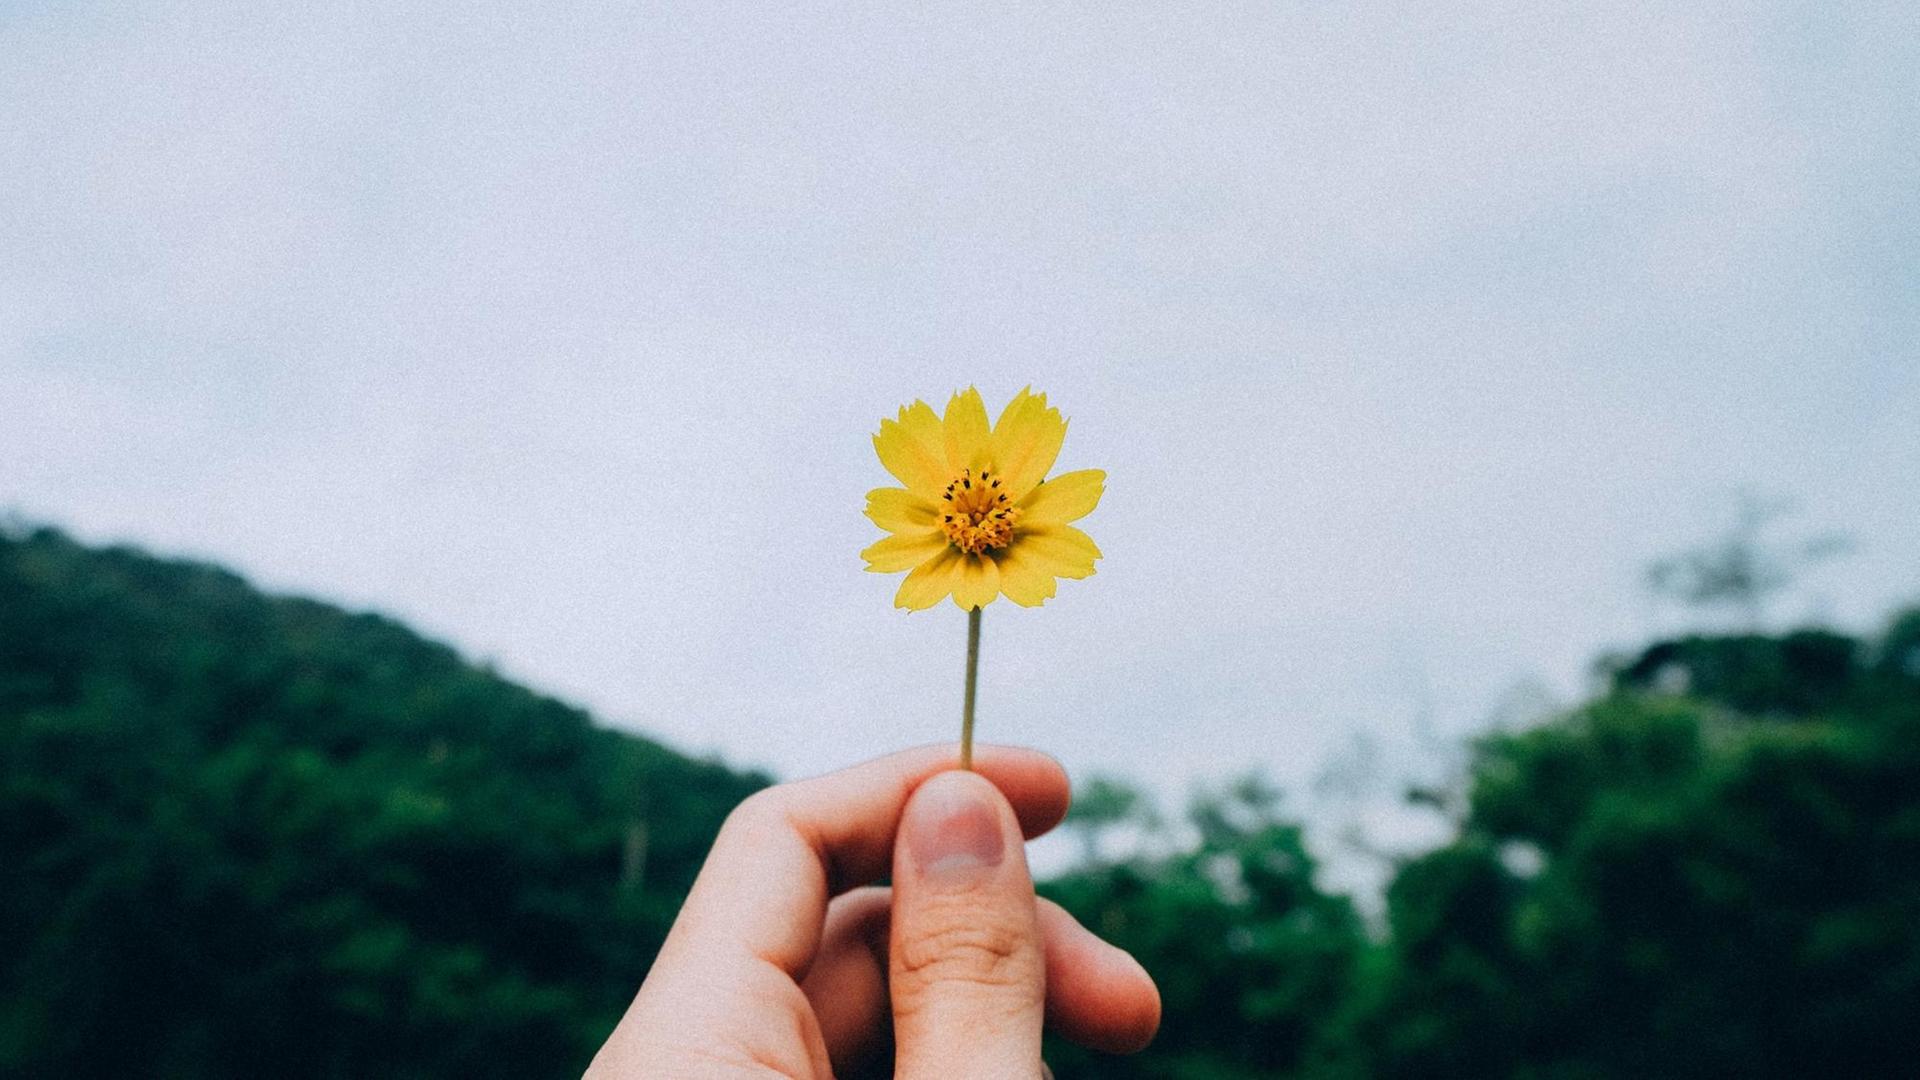 Eine kleine gelbe Blume wird von einer Hand Richtung Himmel gehalten.